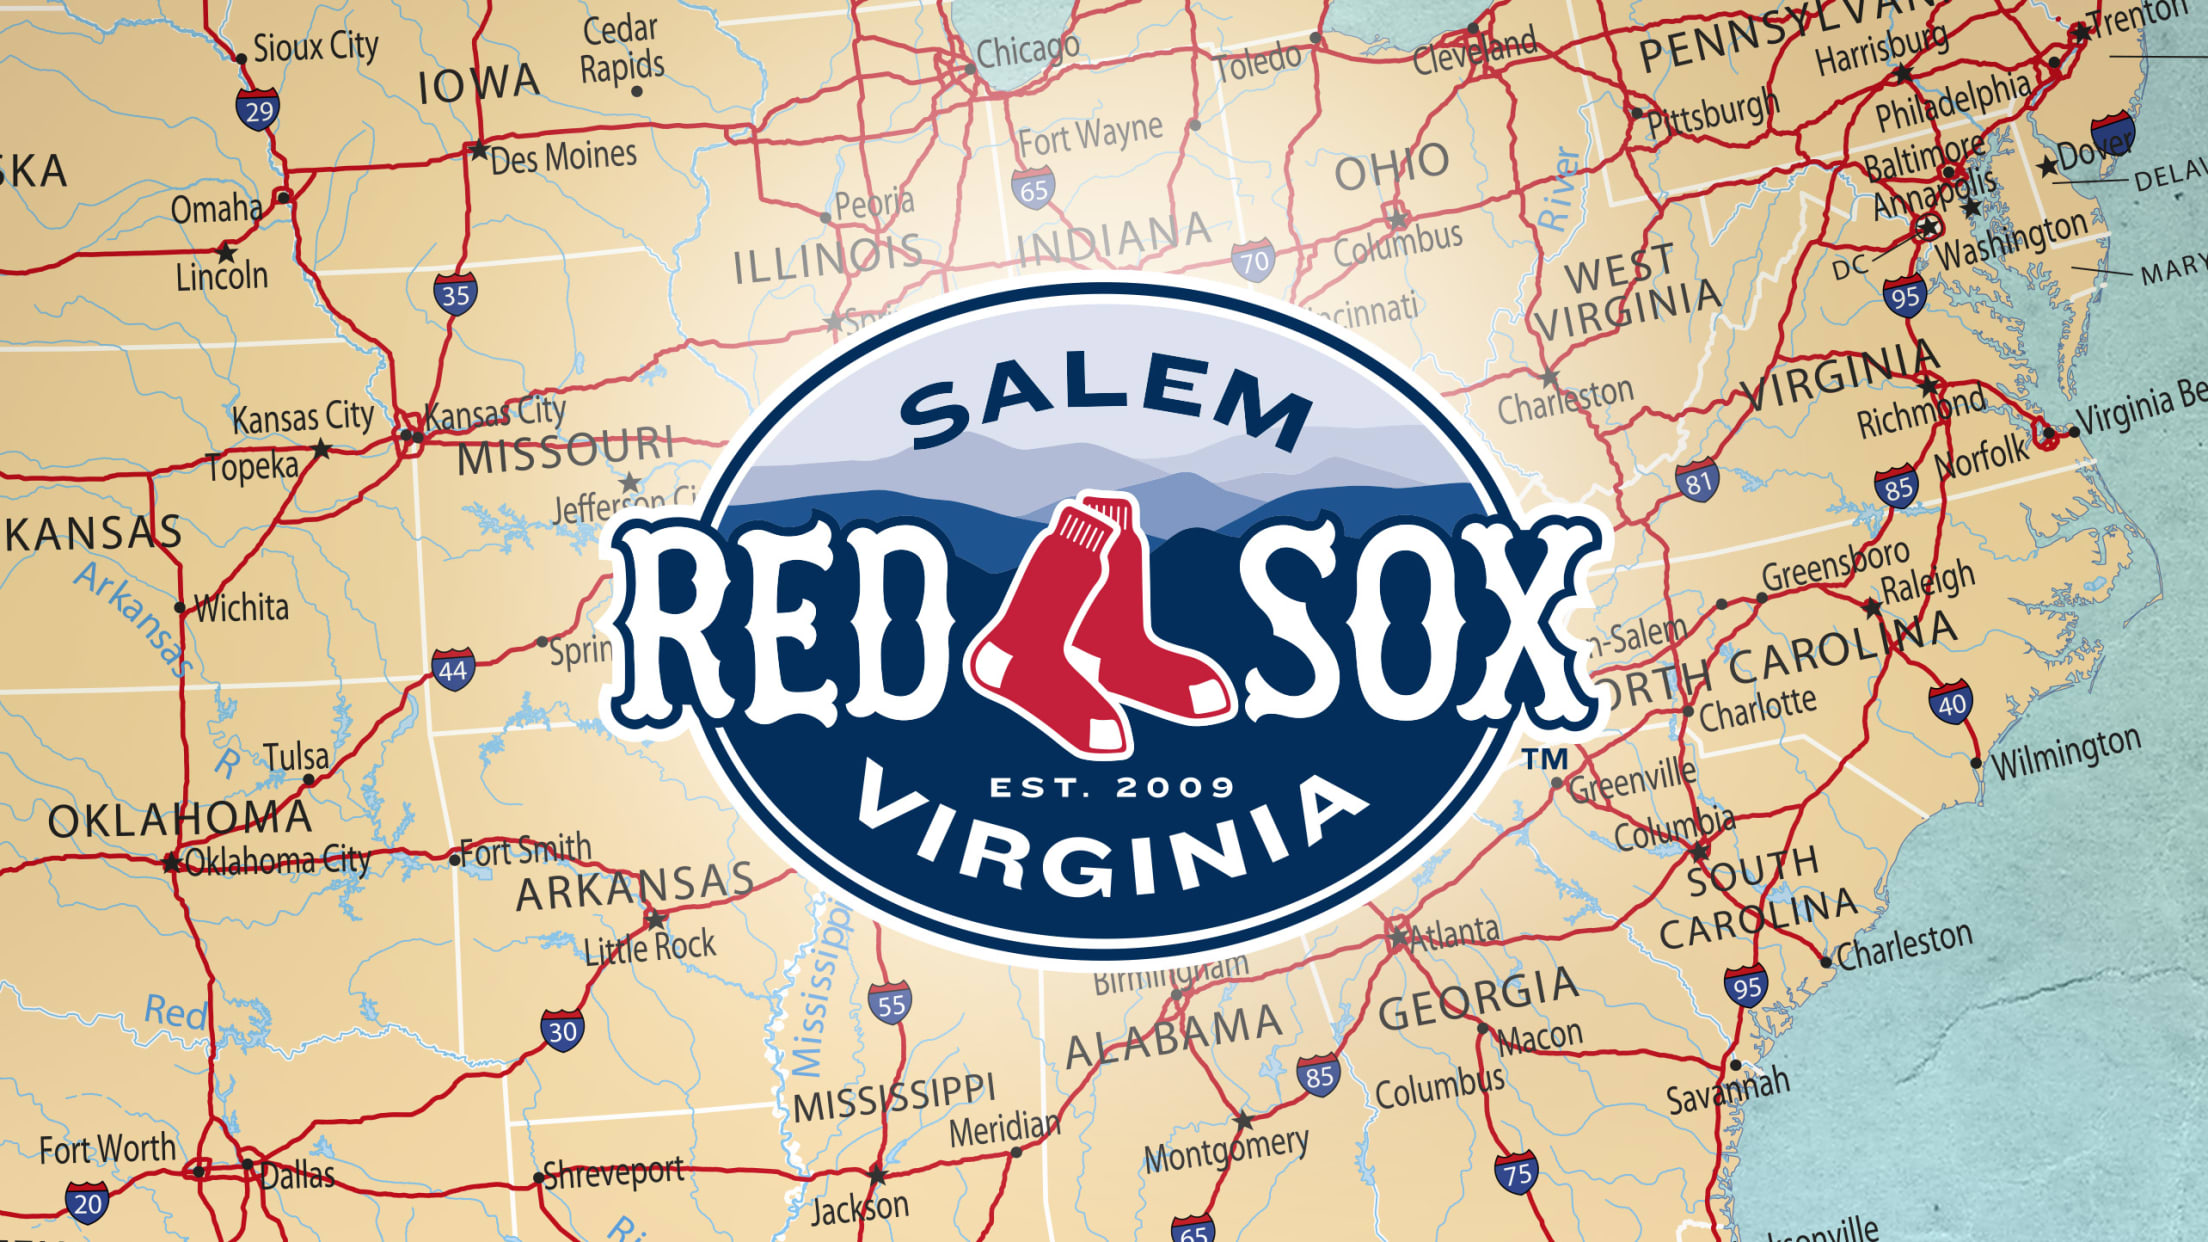 Explore Salem Memorial Ballpark home of the Salem Red Sox